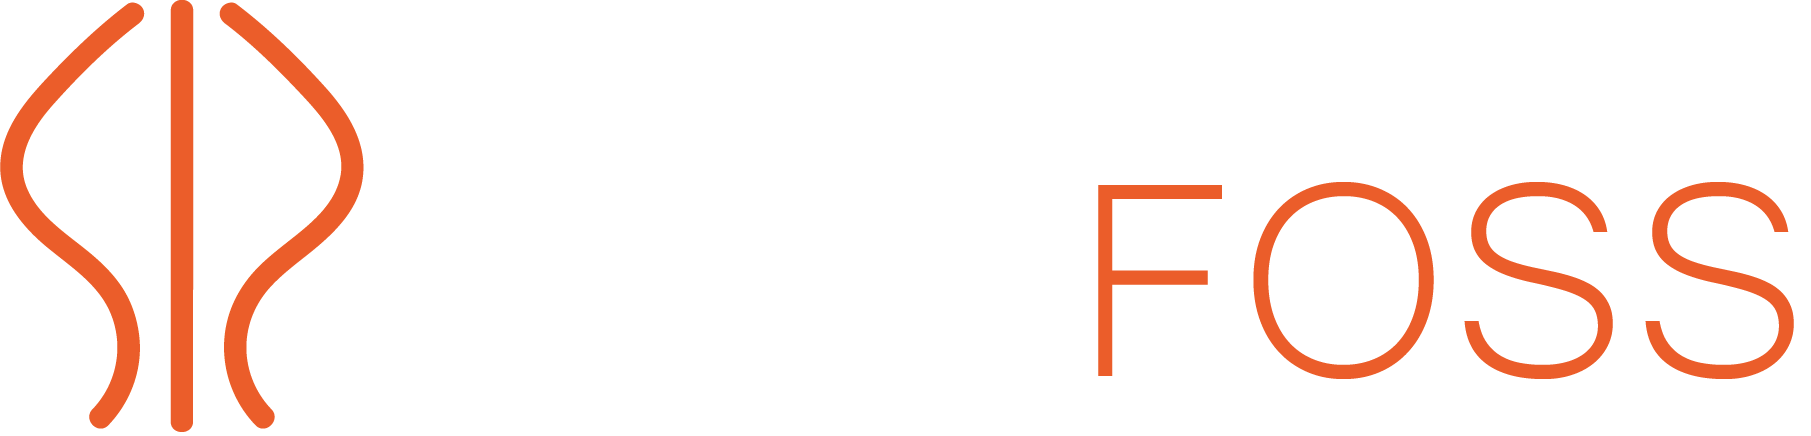 HEATFOSS - Heat Exchanger